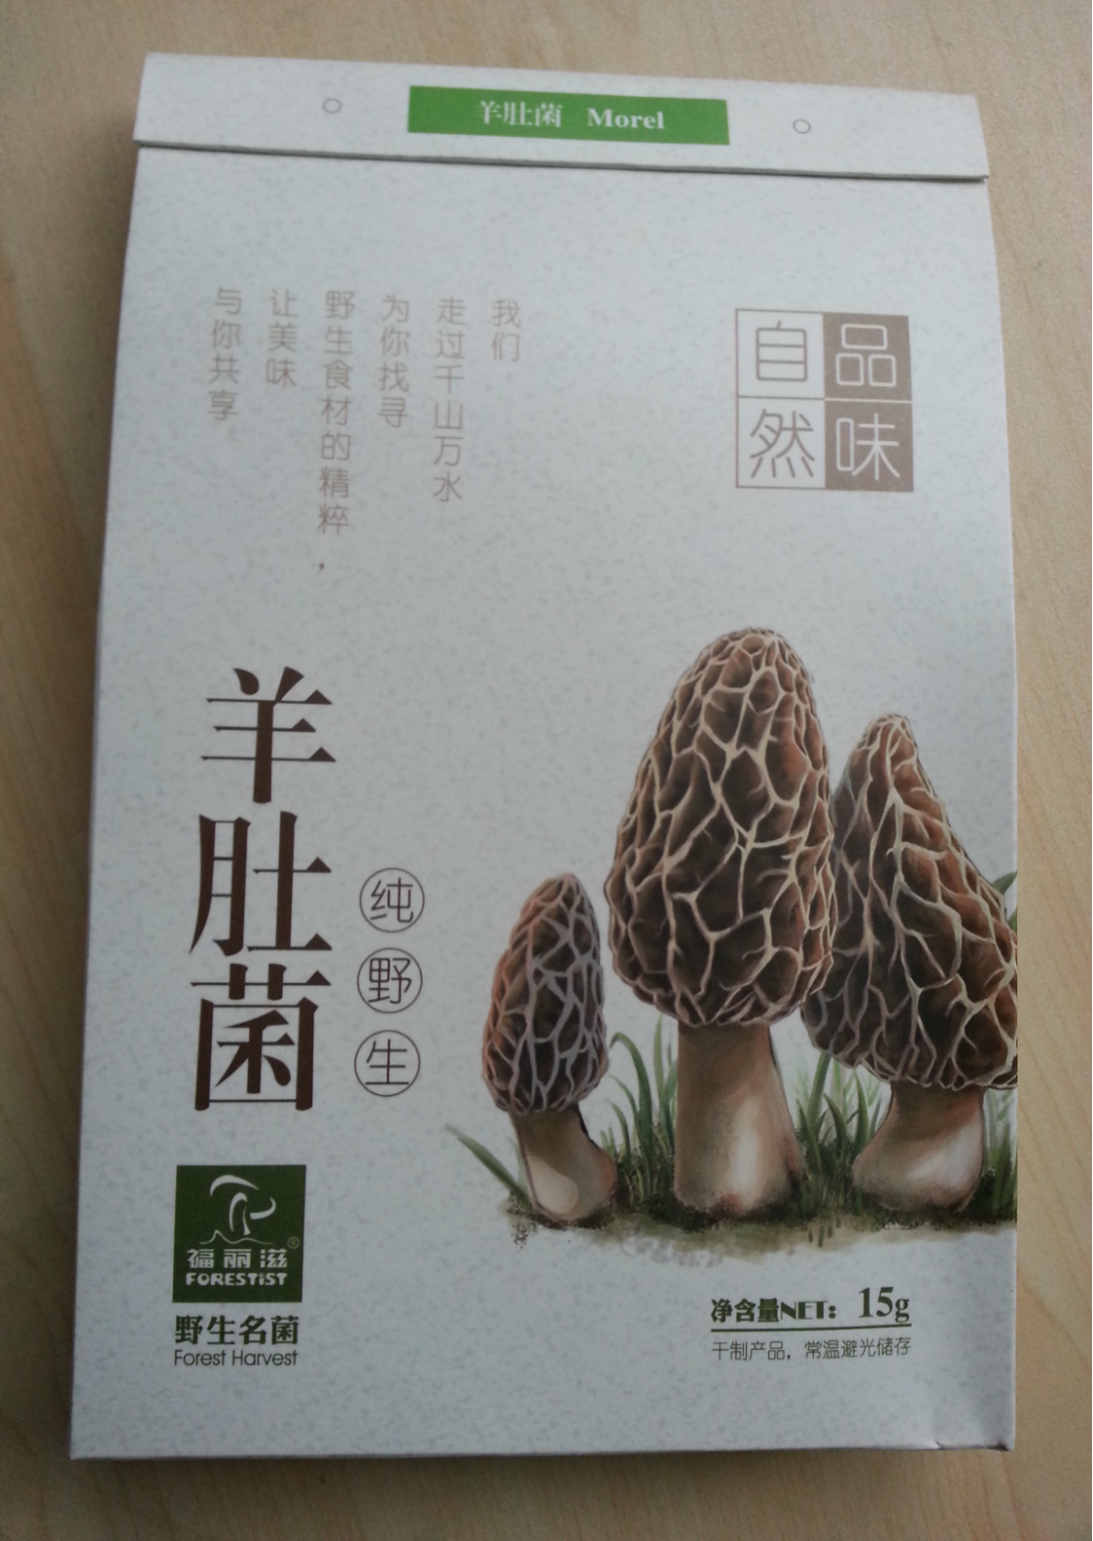 干制野生羊肚菌g g 盒 福丽滋 中国广东省贸易商 食用菌 农产品及物资产品 自助贸易